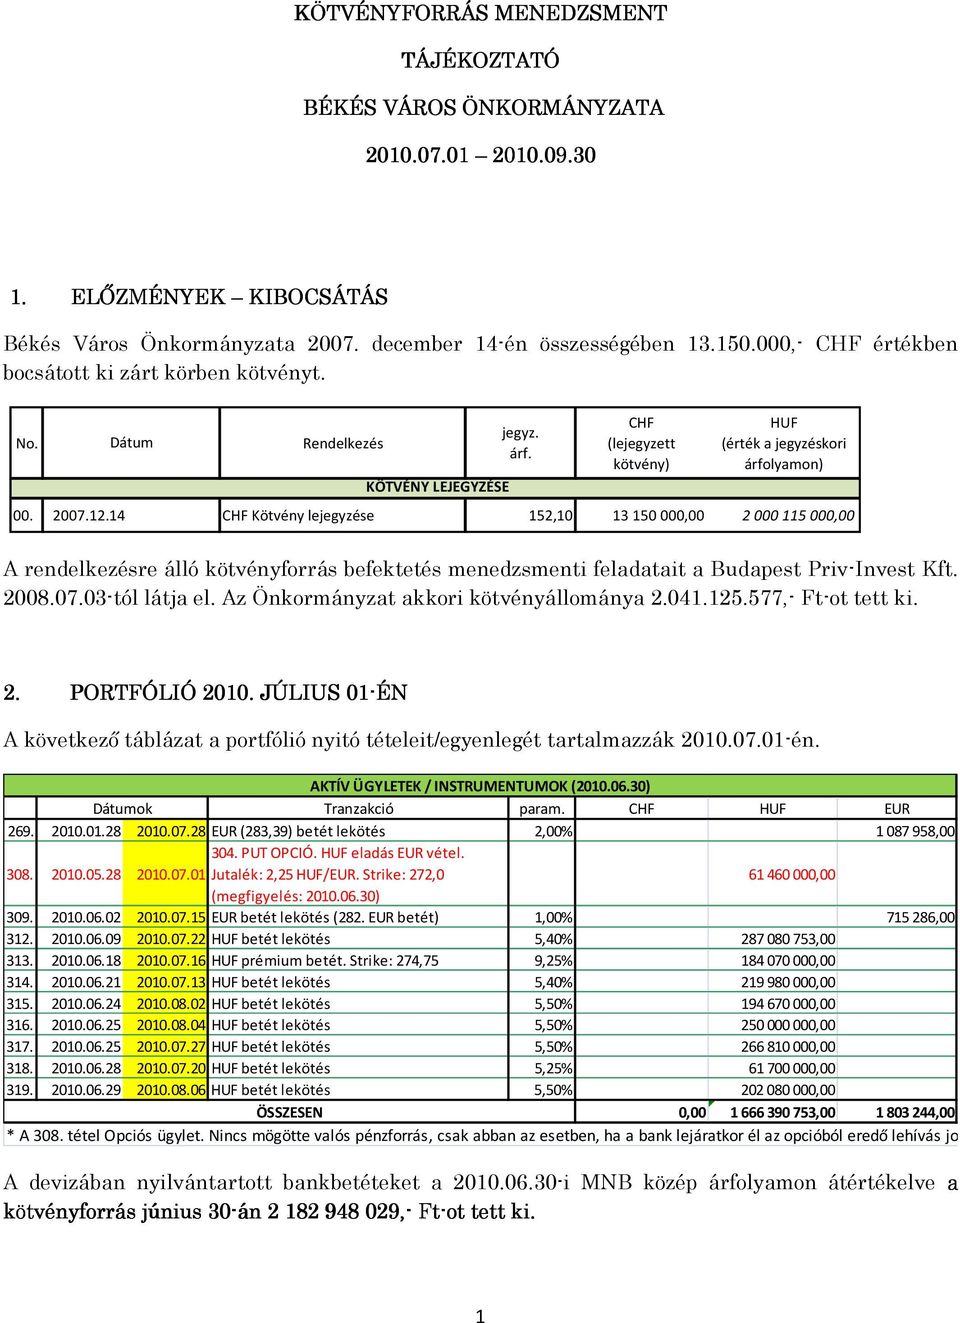 14 CHF Kötvény lejegyzése 152,10 13 150 000,00 2 000 115 000,00 A rendelkezésre álló kötvényforrás befektetés menedzsmenti feladatait a Budapest Priv-Invest Kft. 2008.07.03-tól látja el.